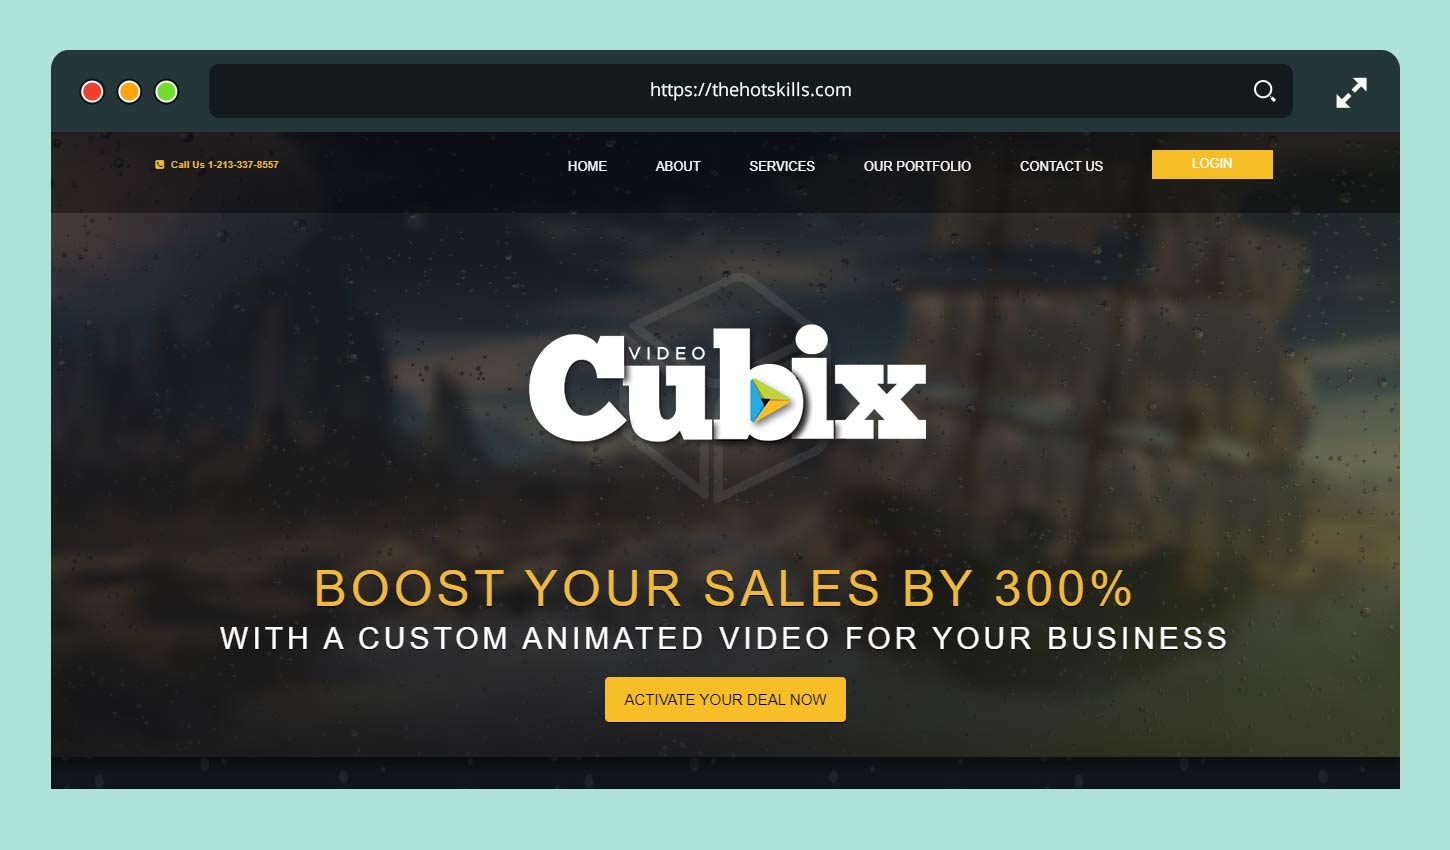 Video Cubix